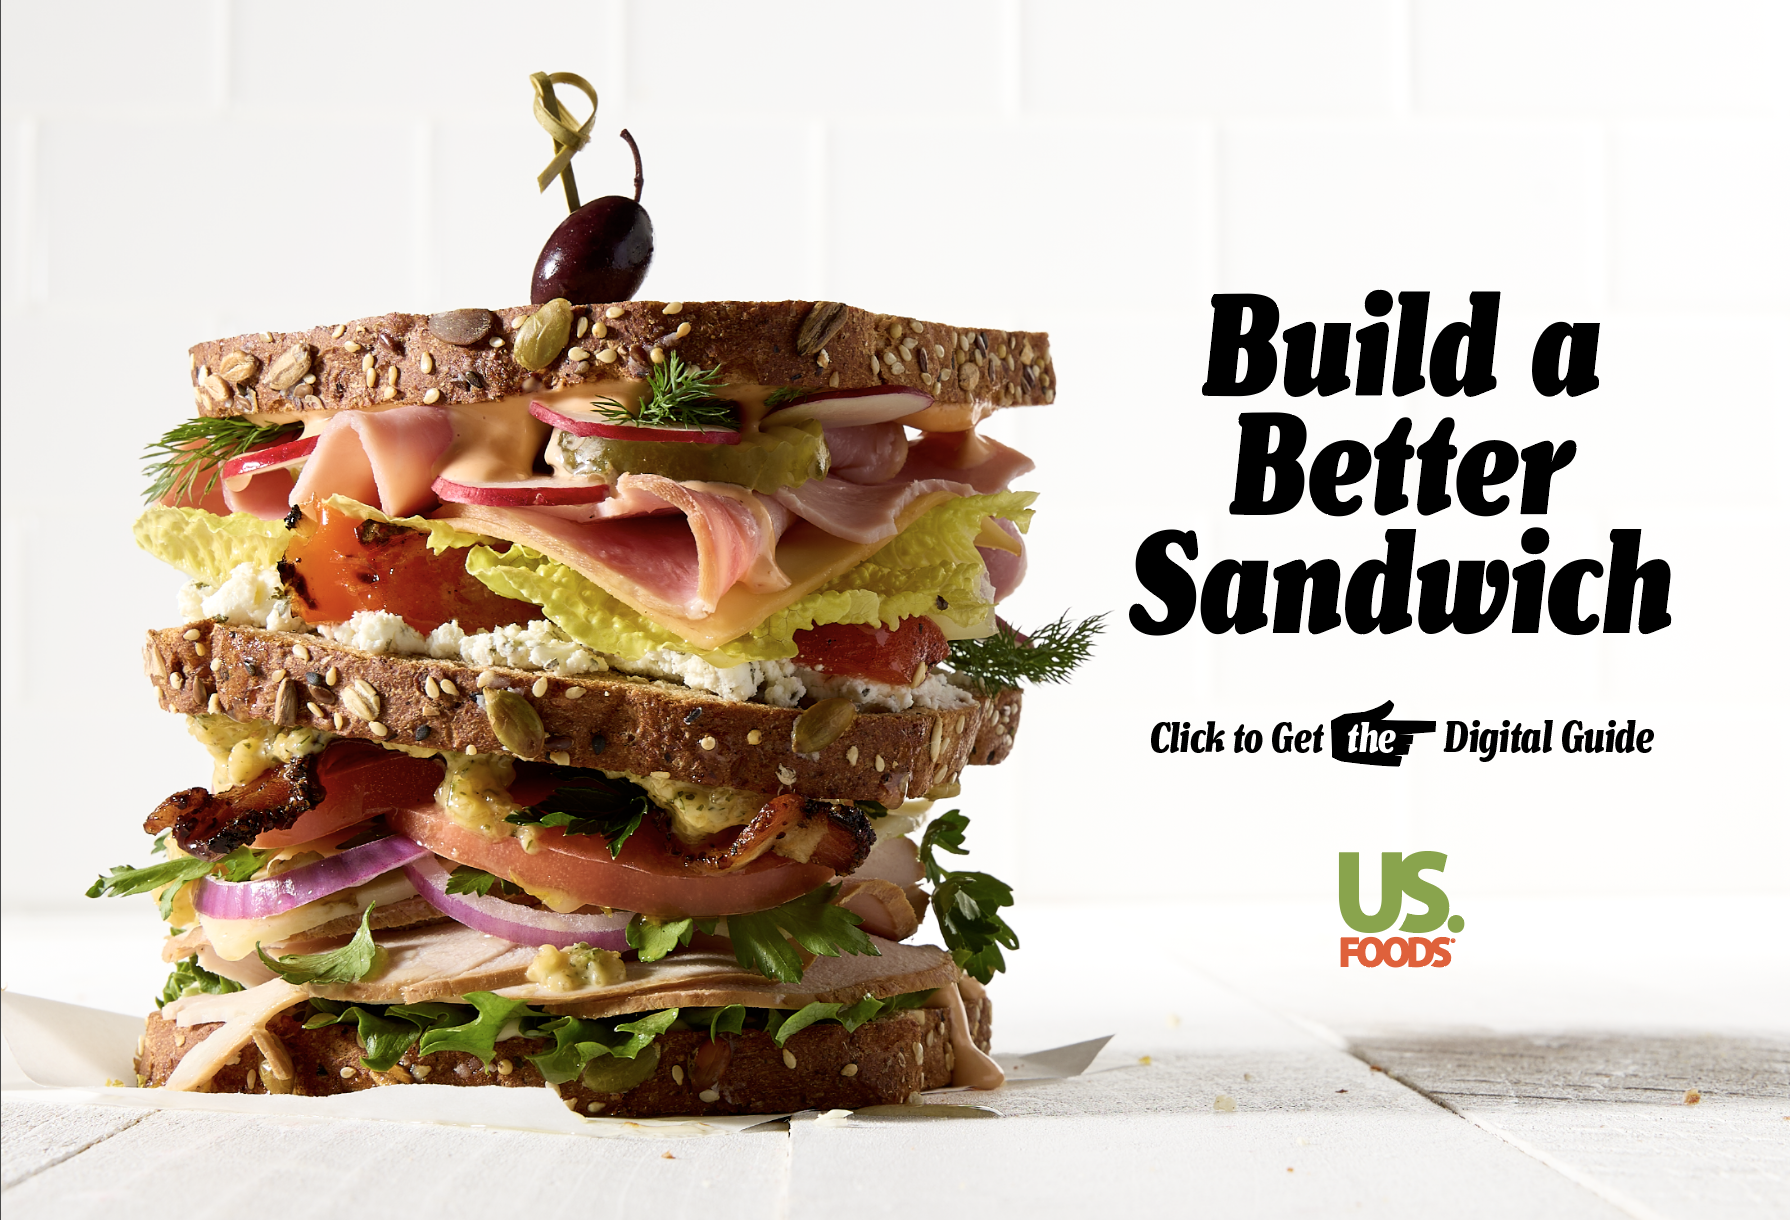 Build a Better Sandwich